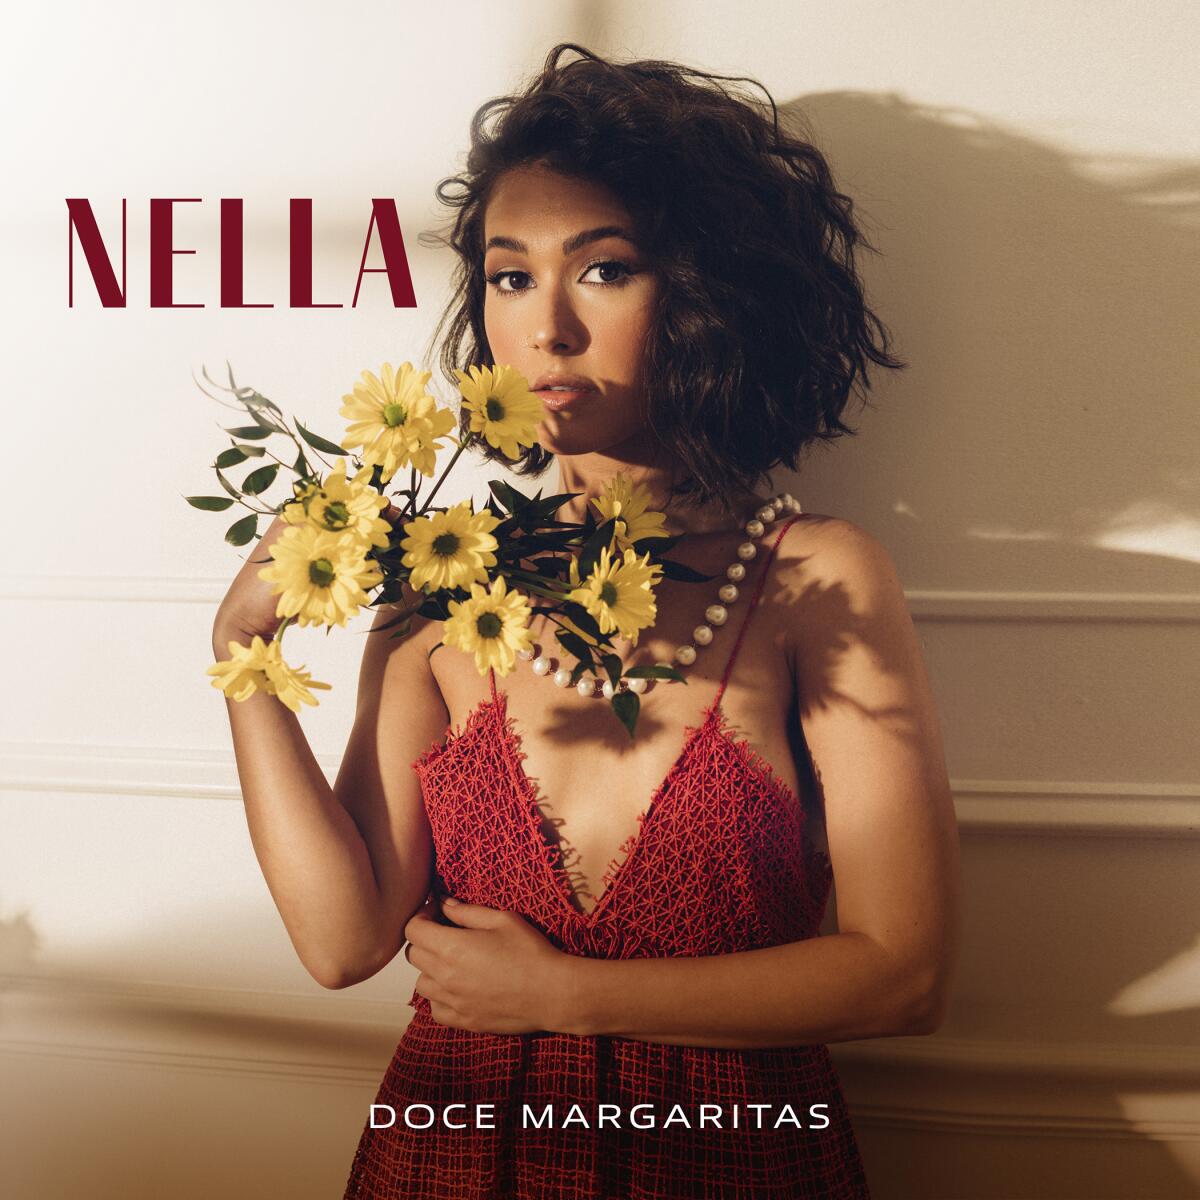 la portada de "Doce Margaritas", el más reciente álbum de la cantante venezolana Nella.